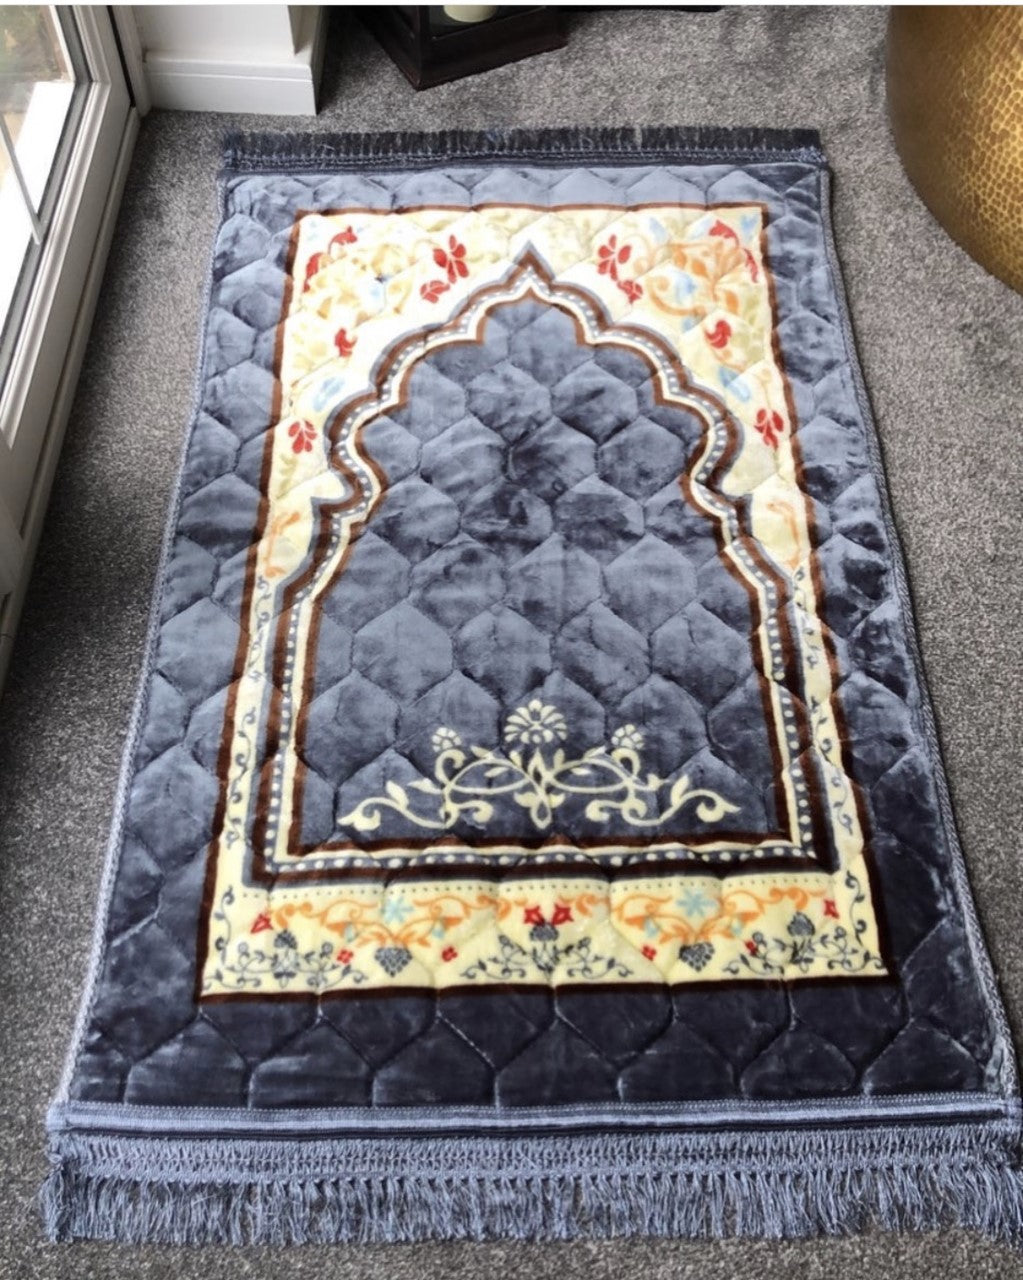 Prayerrug, Modern Rug, Modern Mat, Prayer Rug, Large XL Personalised Prayer  Mat, Muslim Prayer Rug, Islamic Gift, Anti Slip Backing,musallah 